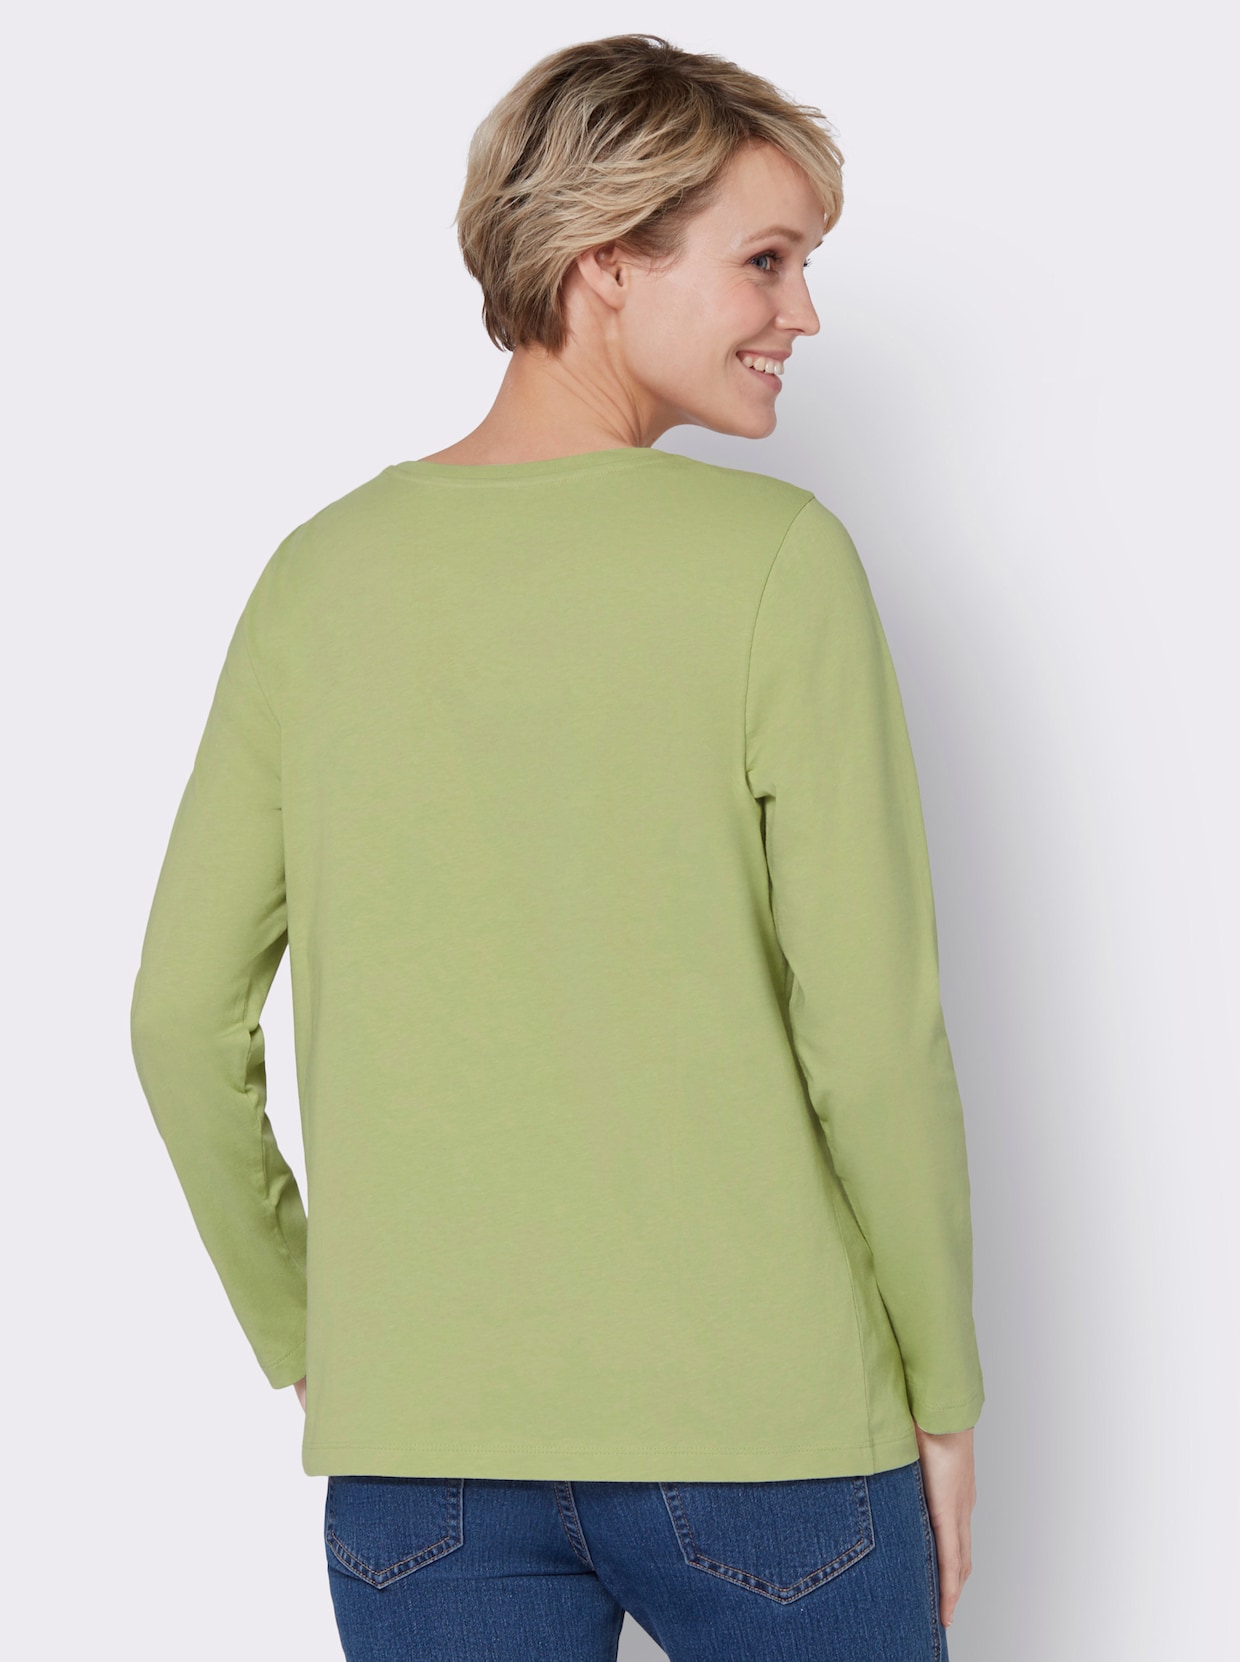 Tričko s dlhými rukávmi - Lipová zelená-čokoládová